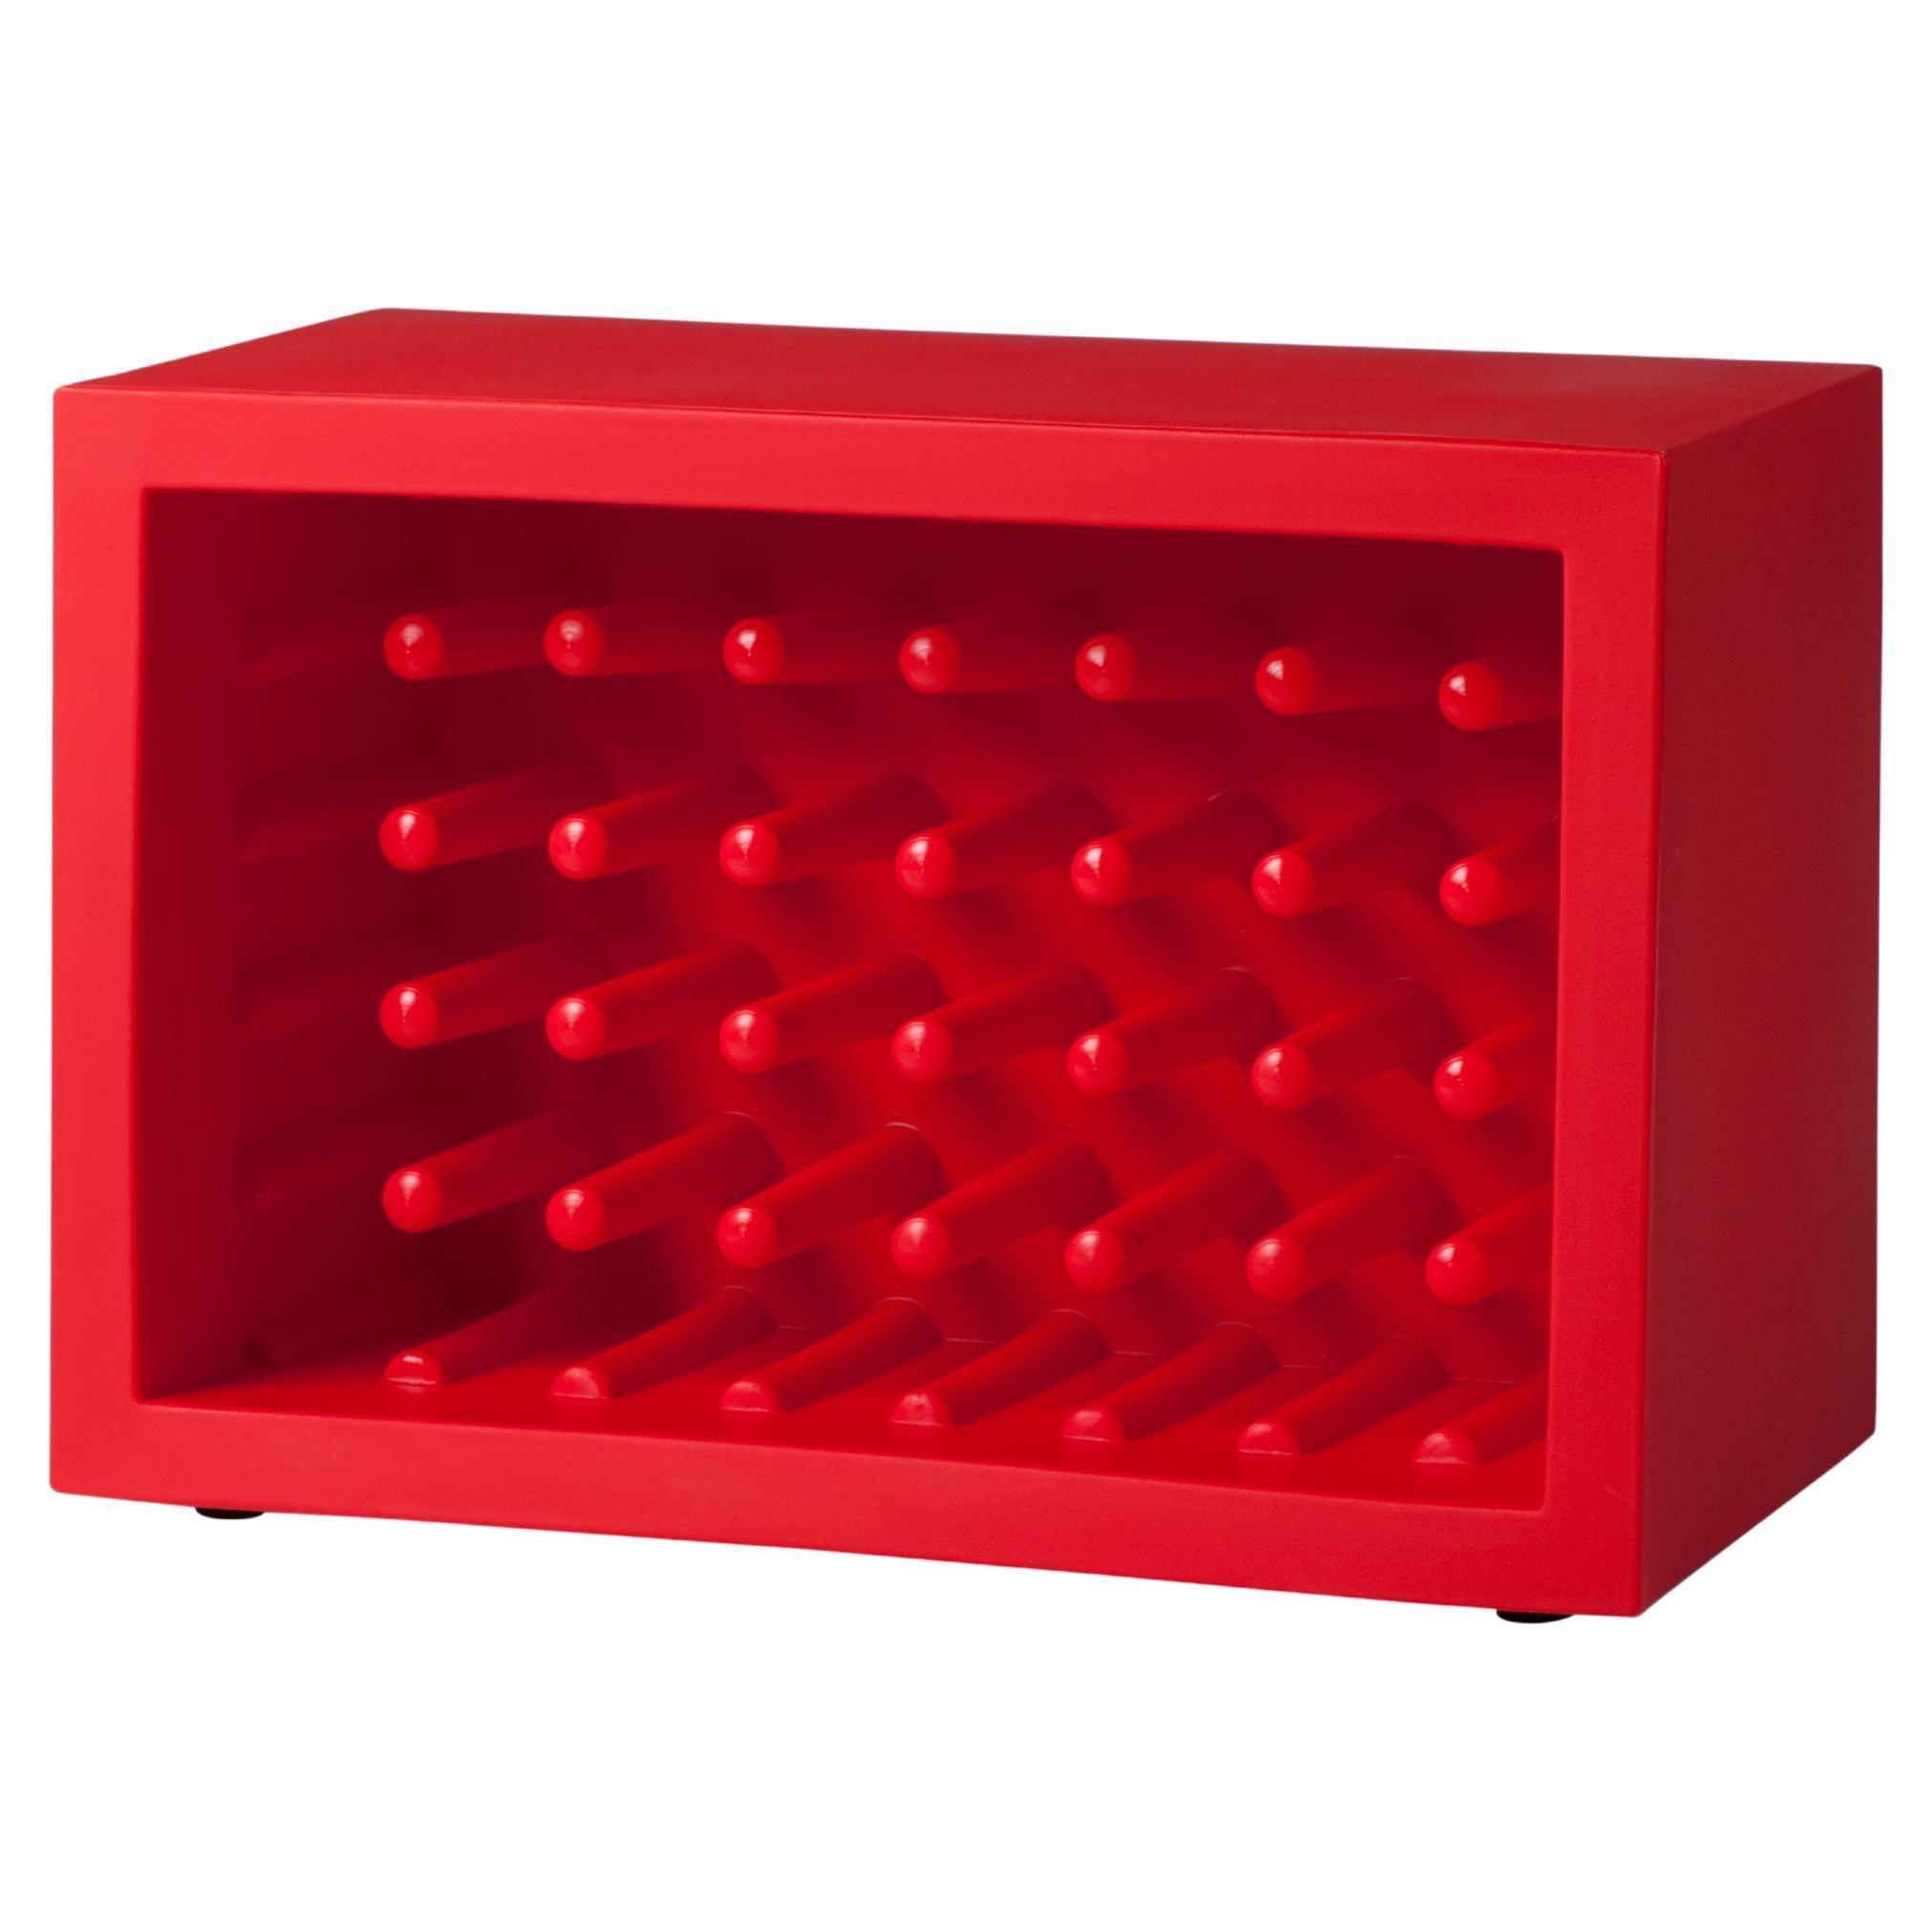 Porte-bouteilles Bachus Slide Design rouge flamme de Marcel Wanders en vente